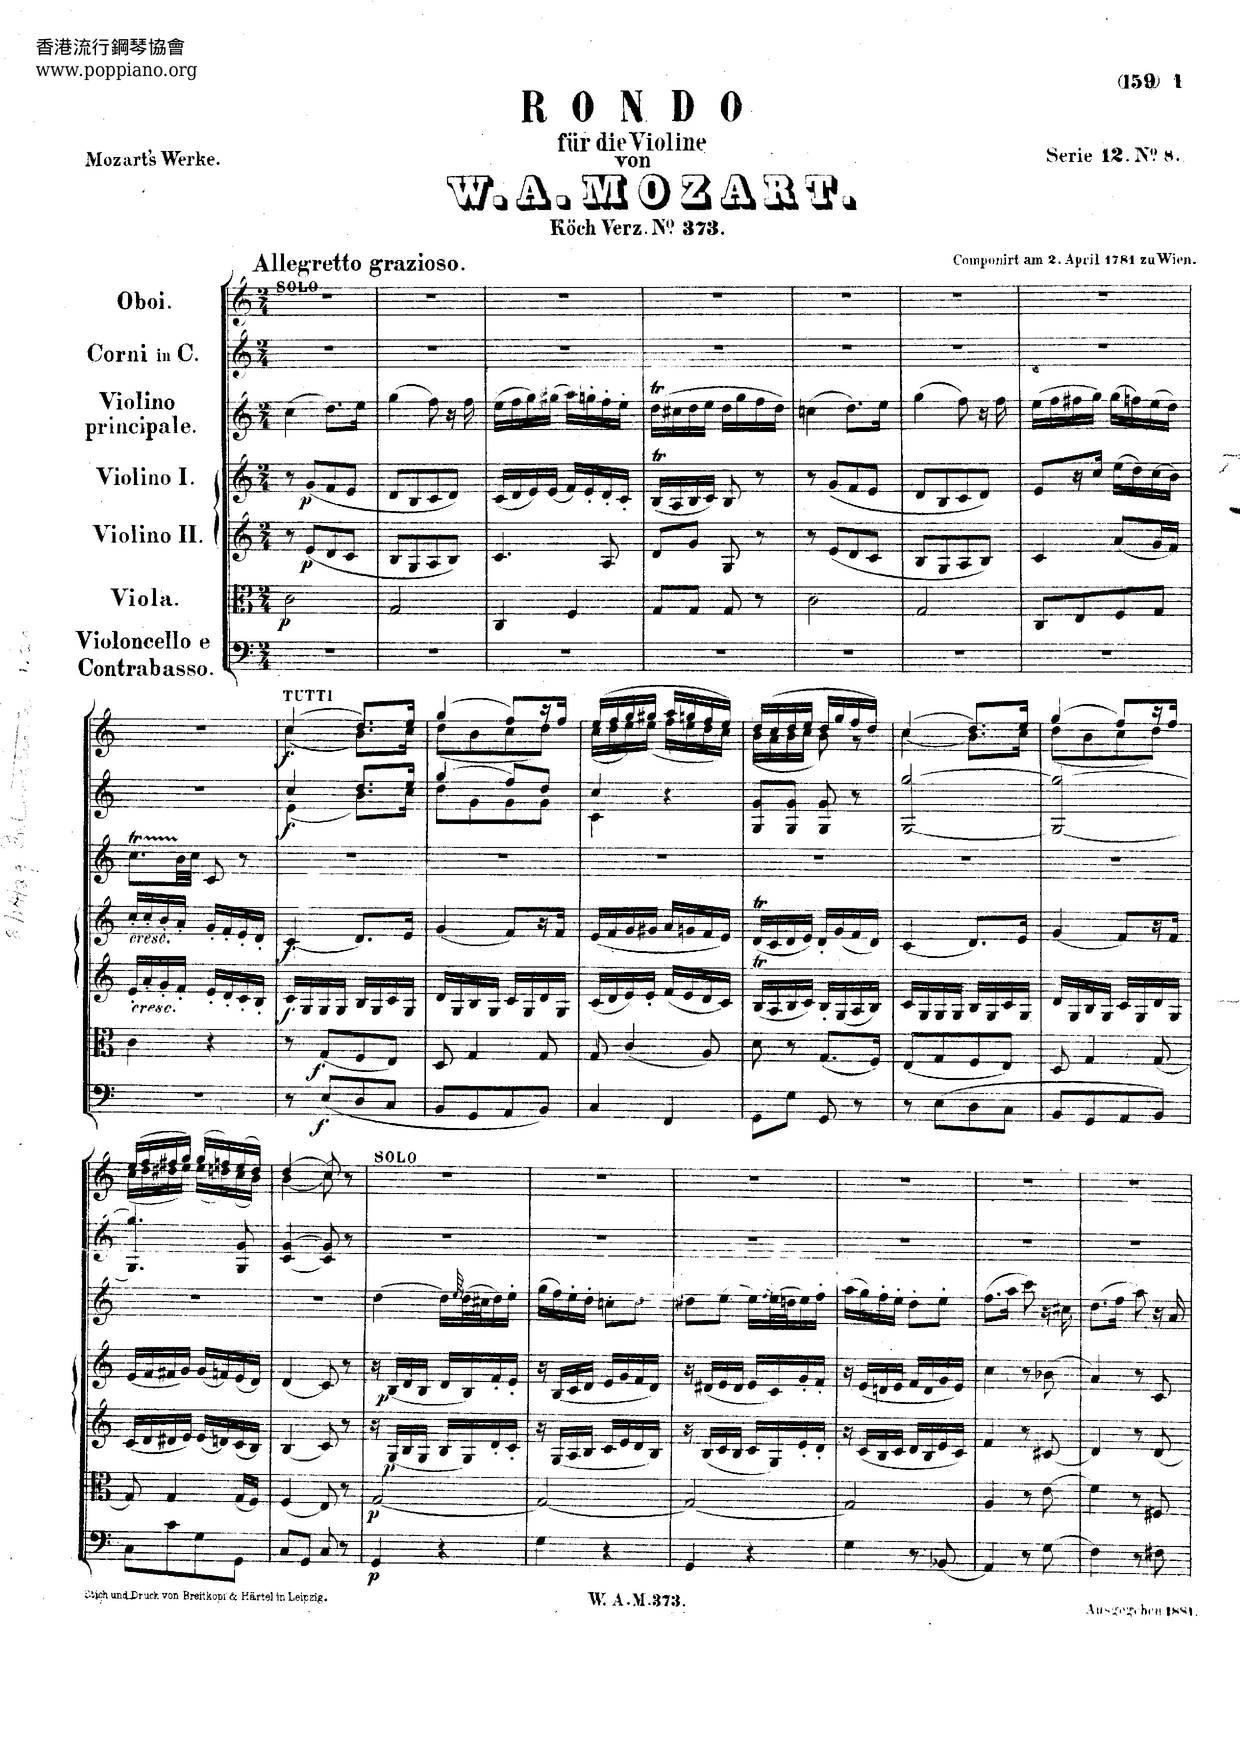 Rondo In C Major, K. 373 Score